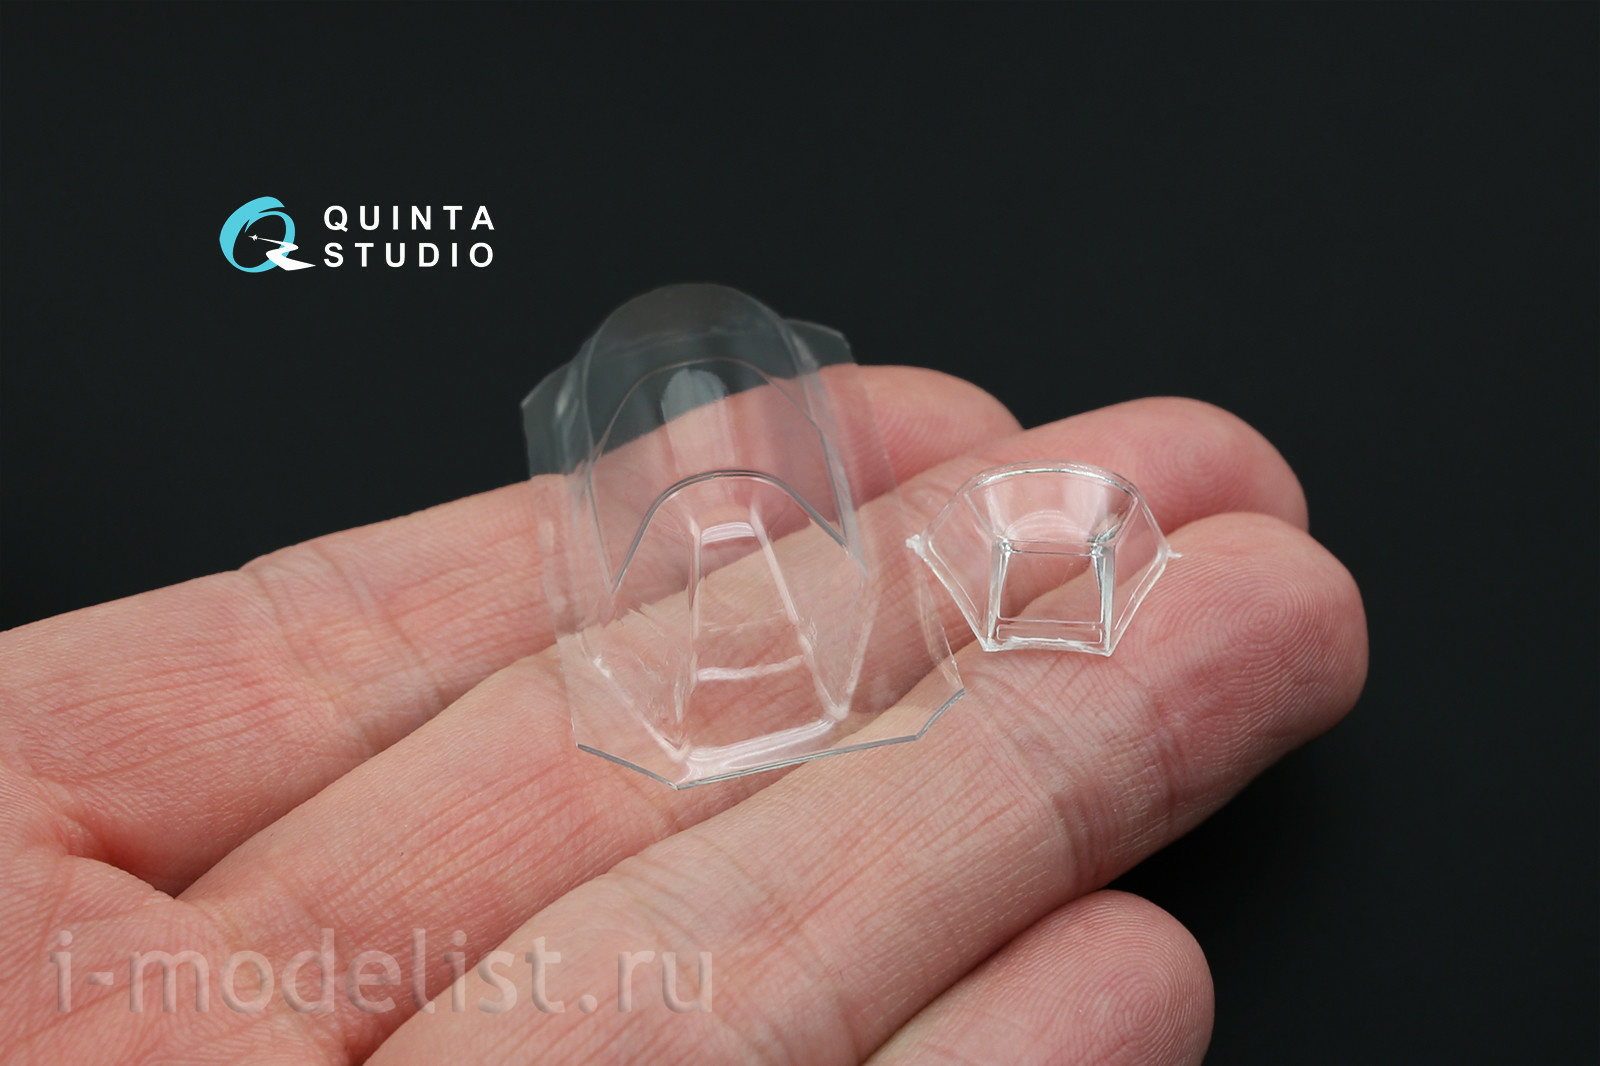 QC48020 Quinta Studio 1/48 Набор остекления коррекционный Yakovlev-1Б (для моделей Accurate miniatures, Звезда, Eduard), 1 шт